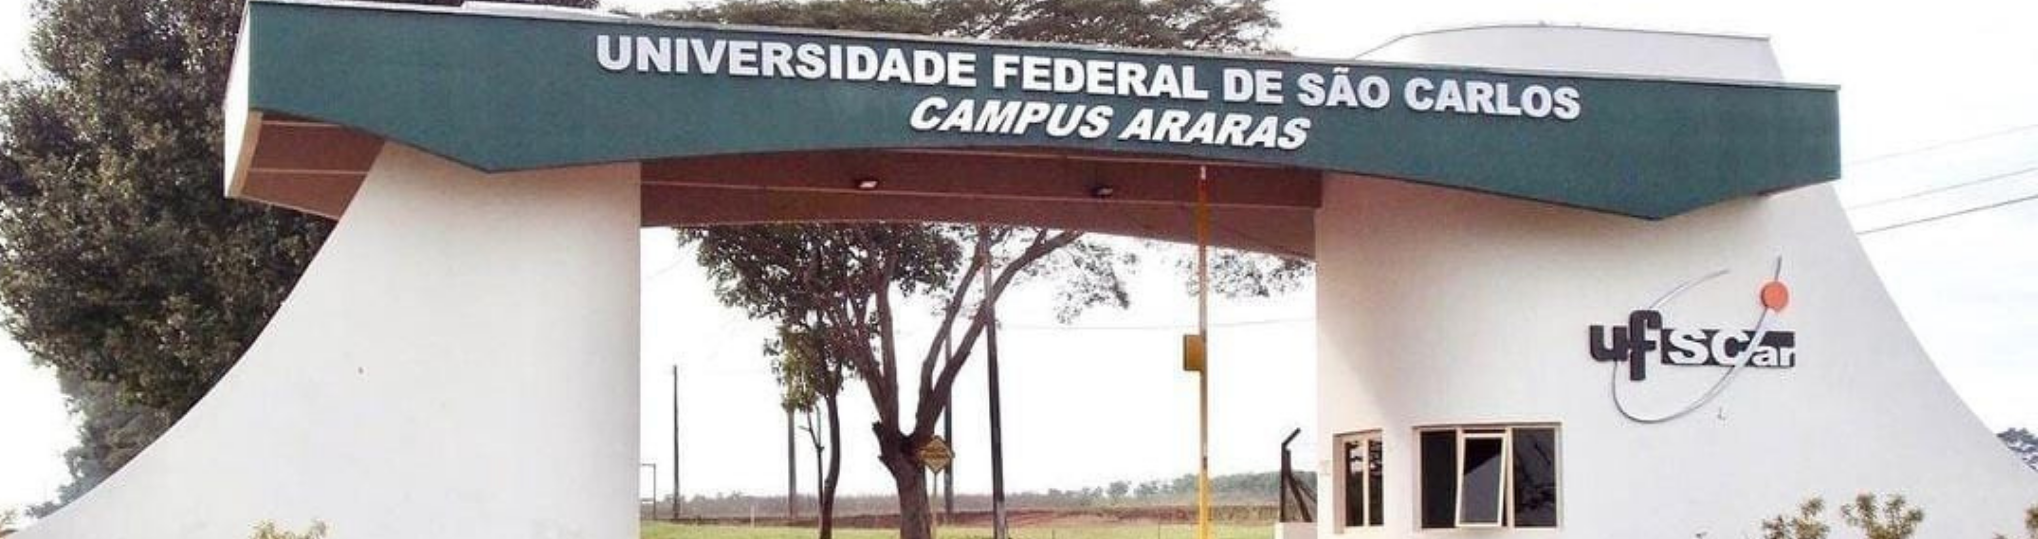 Portal da UFSCar - campus Araras